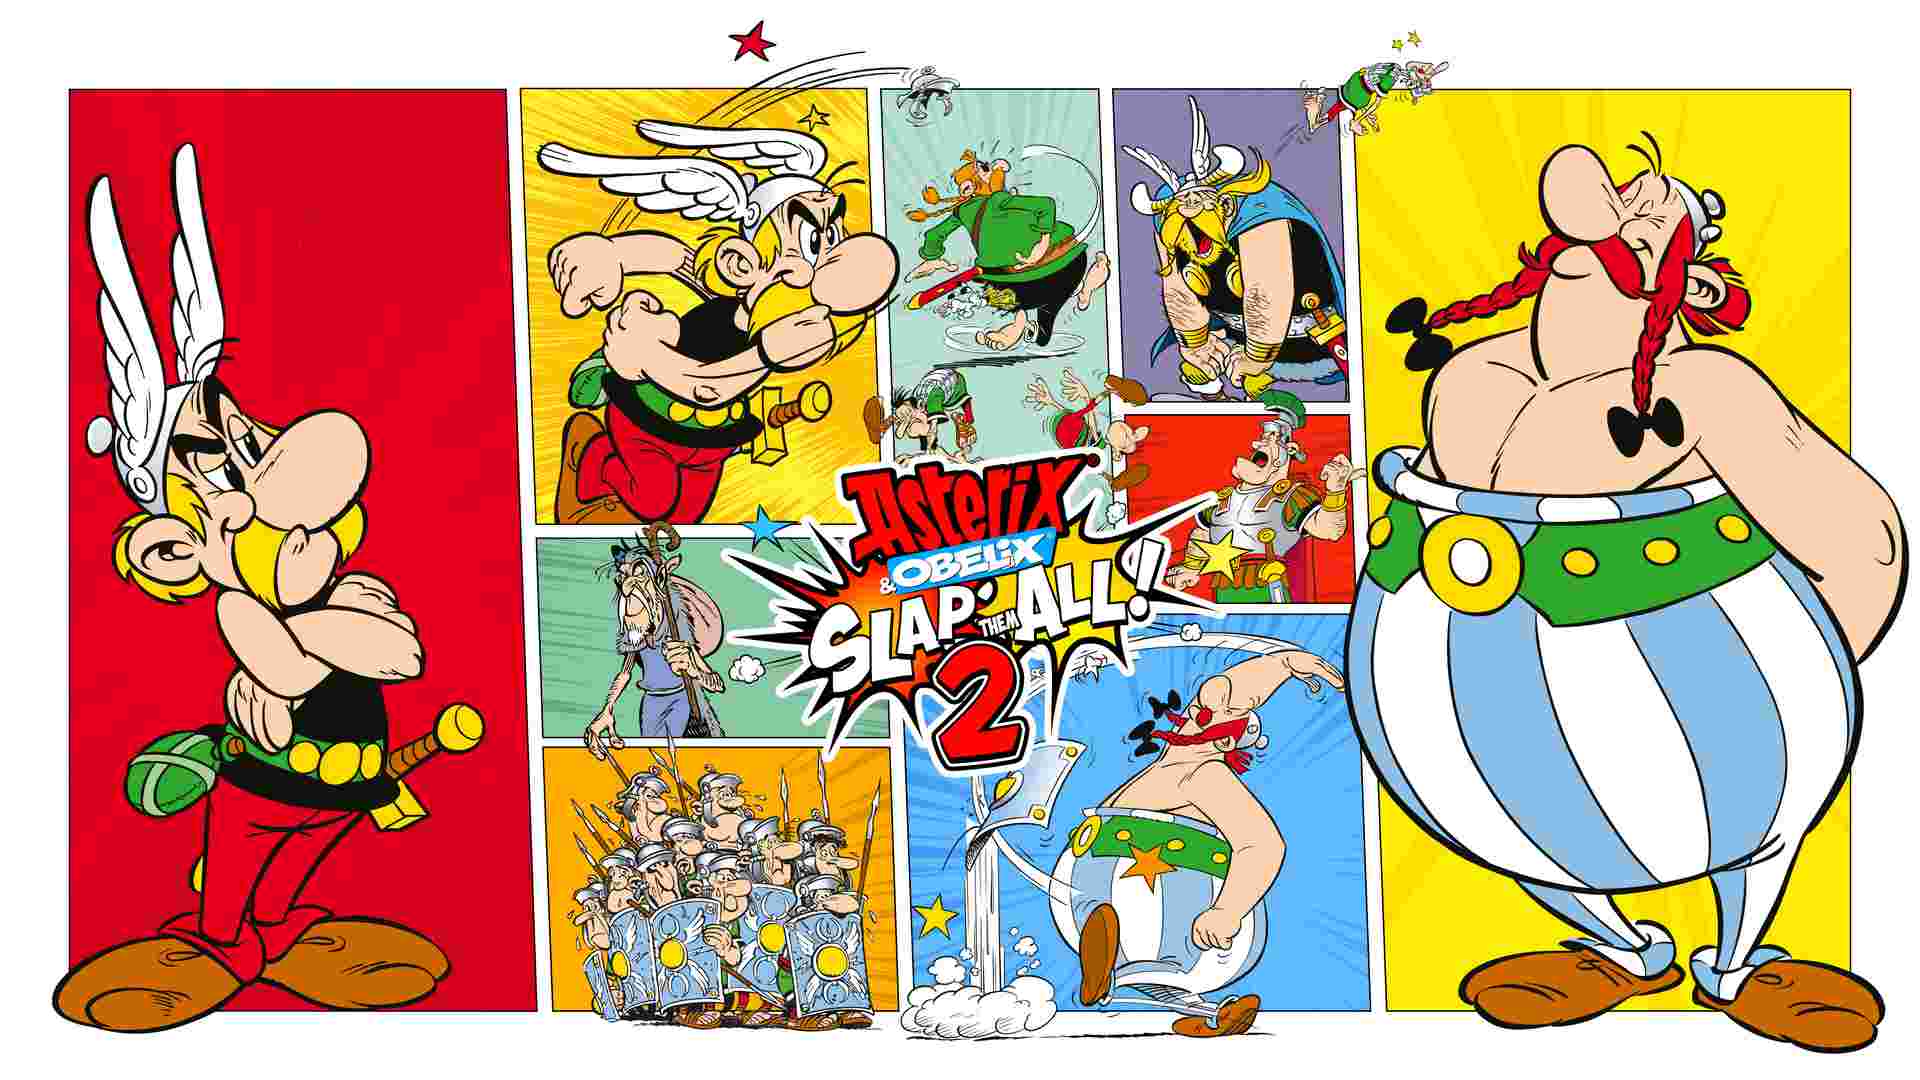 Asterix & Obelix Slap Them All 2 ora in edizione fisica